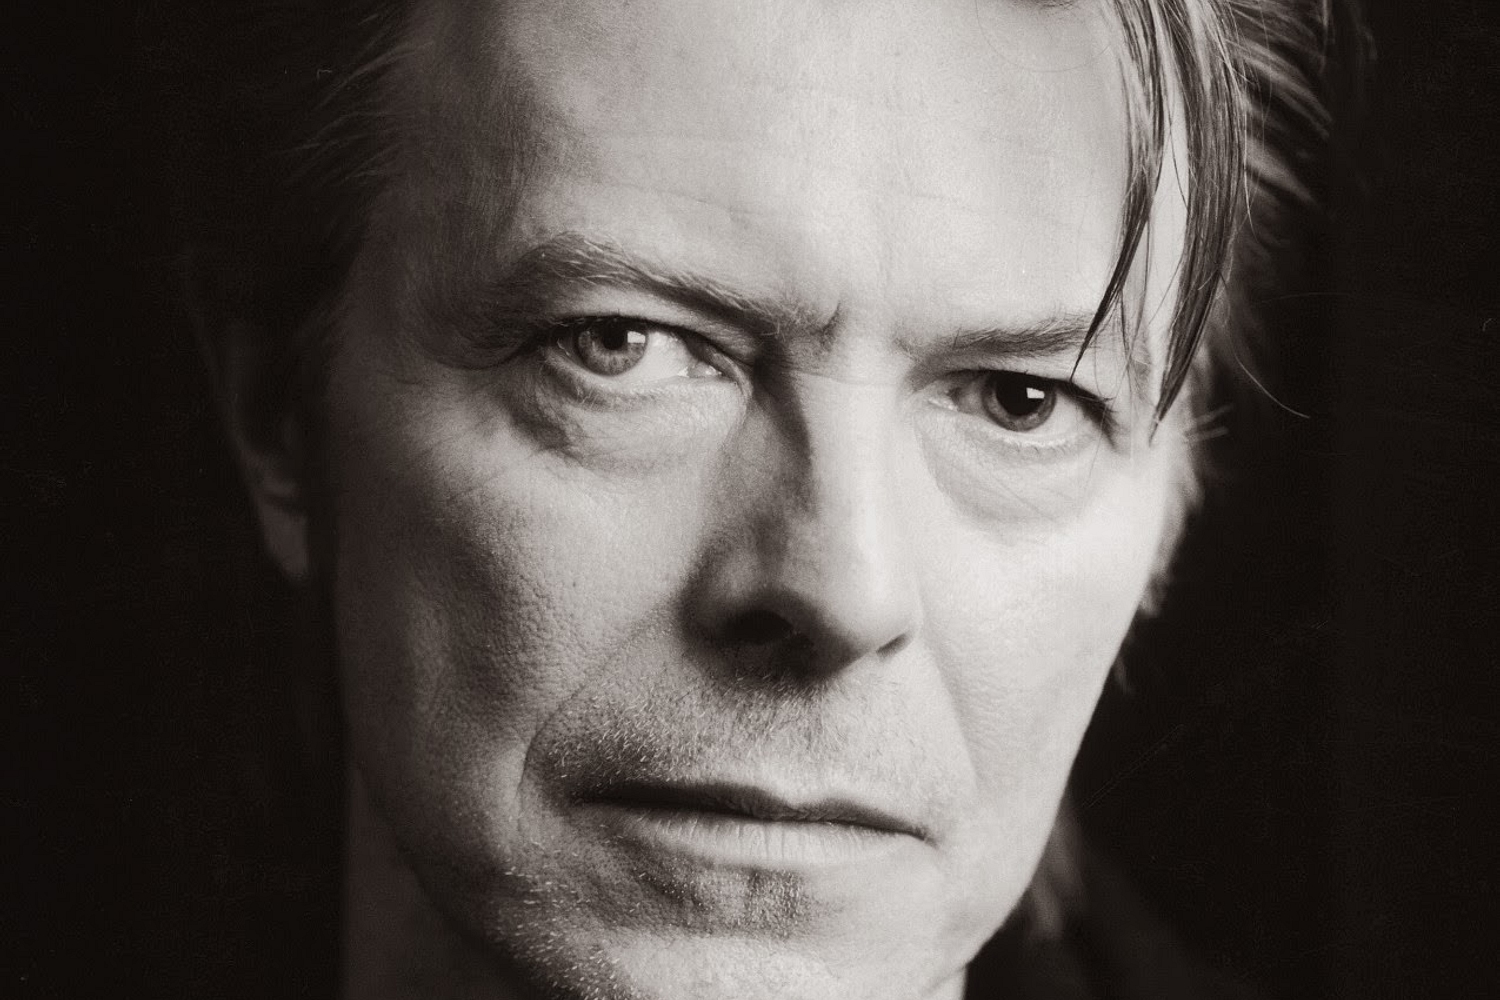 David Bowie to release ‘Blackstar’ album in 2016